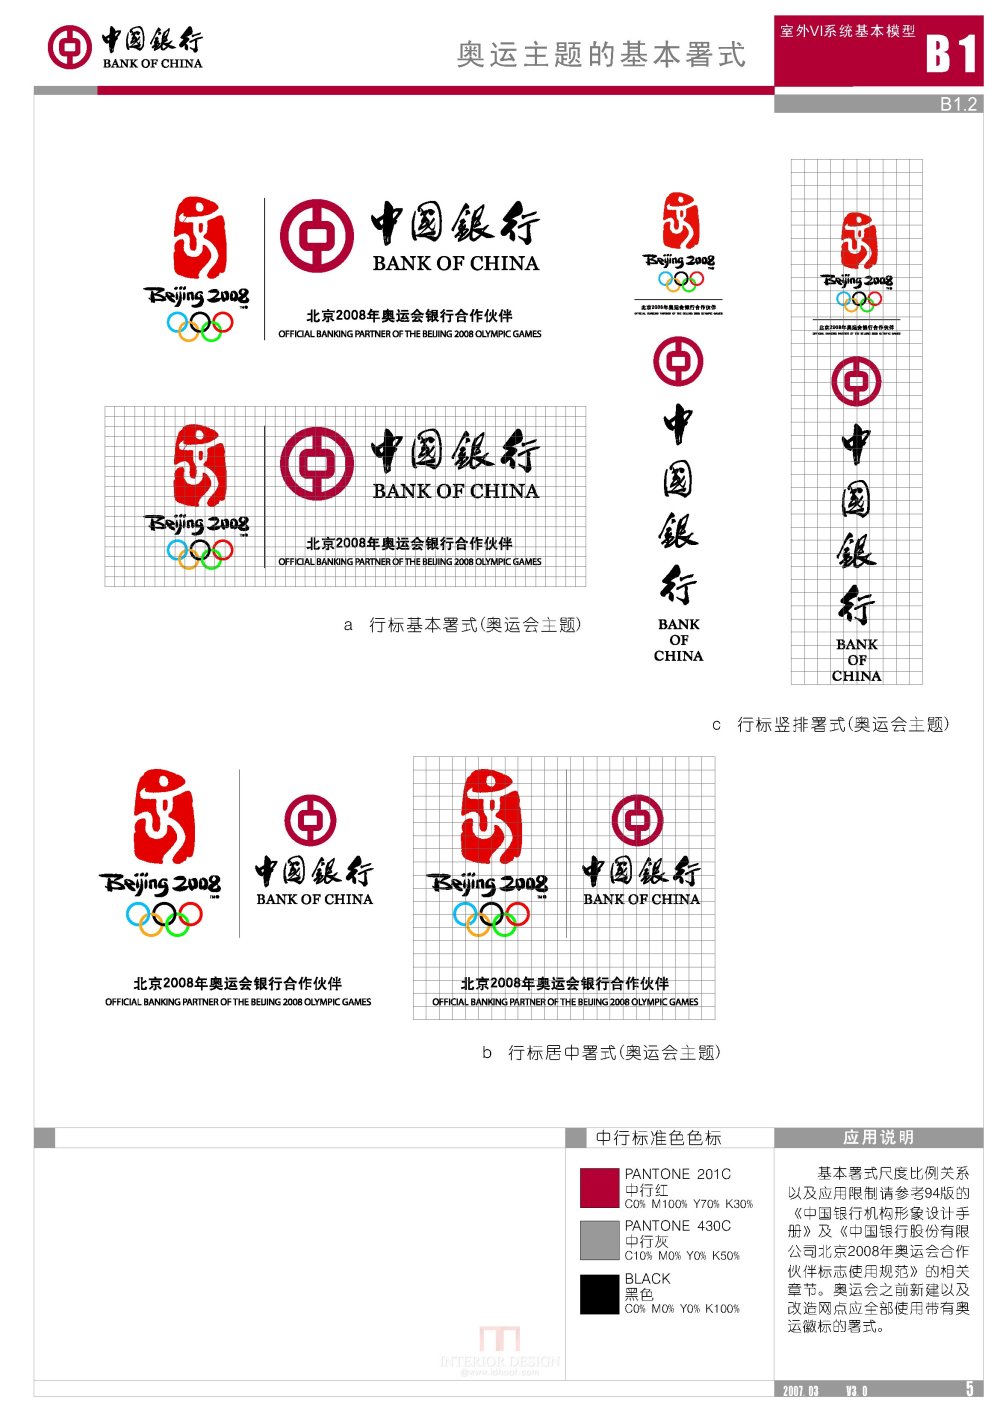 学会银行设计 中国银行形象标准化手册V3.0版_中国银行形象标准化手册V3.0版_页面_011.jpg